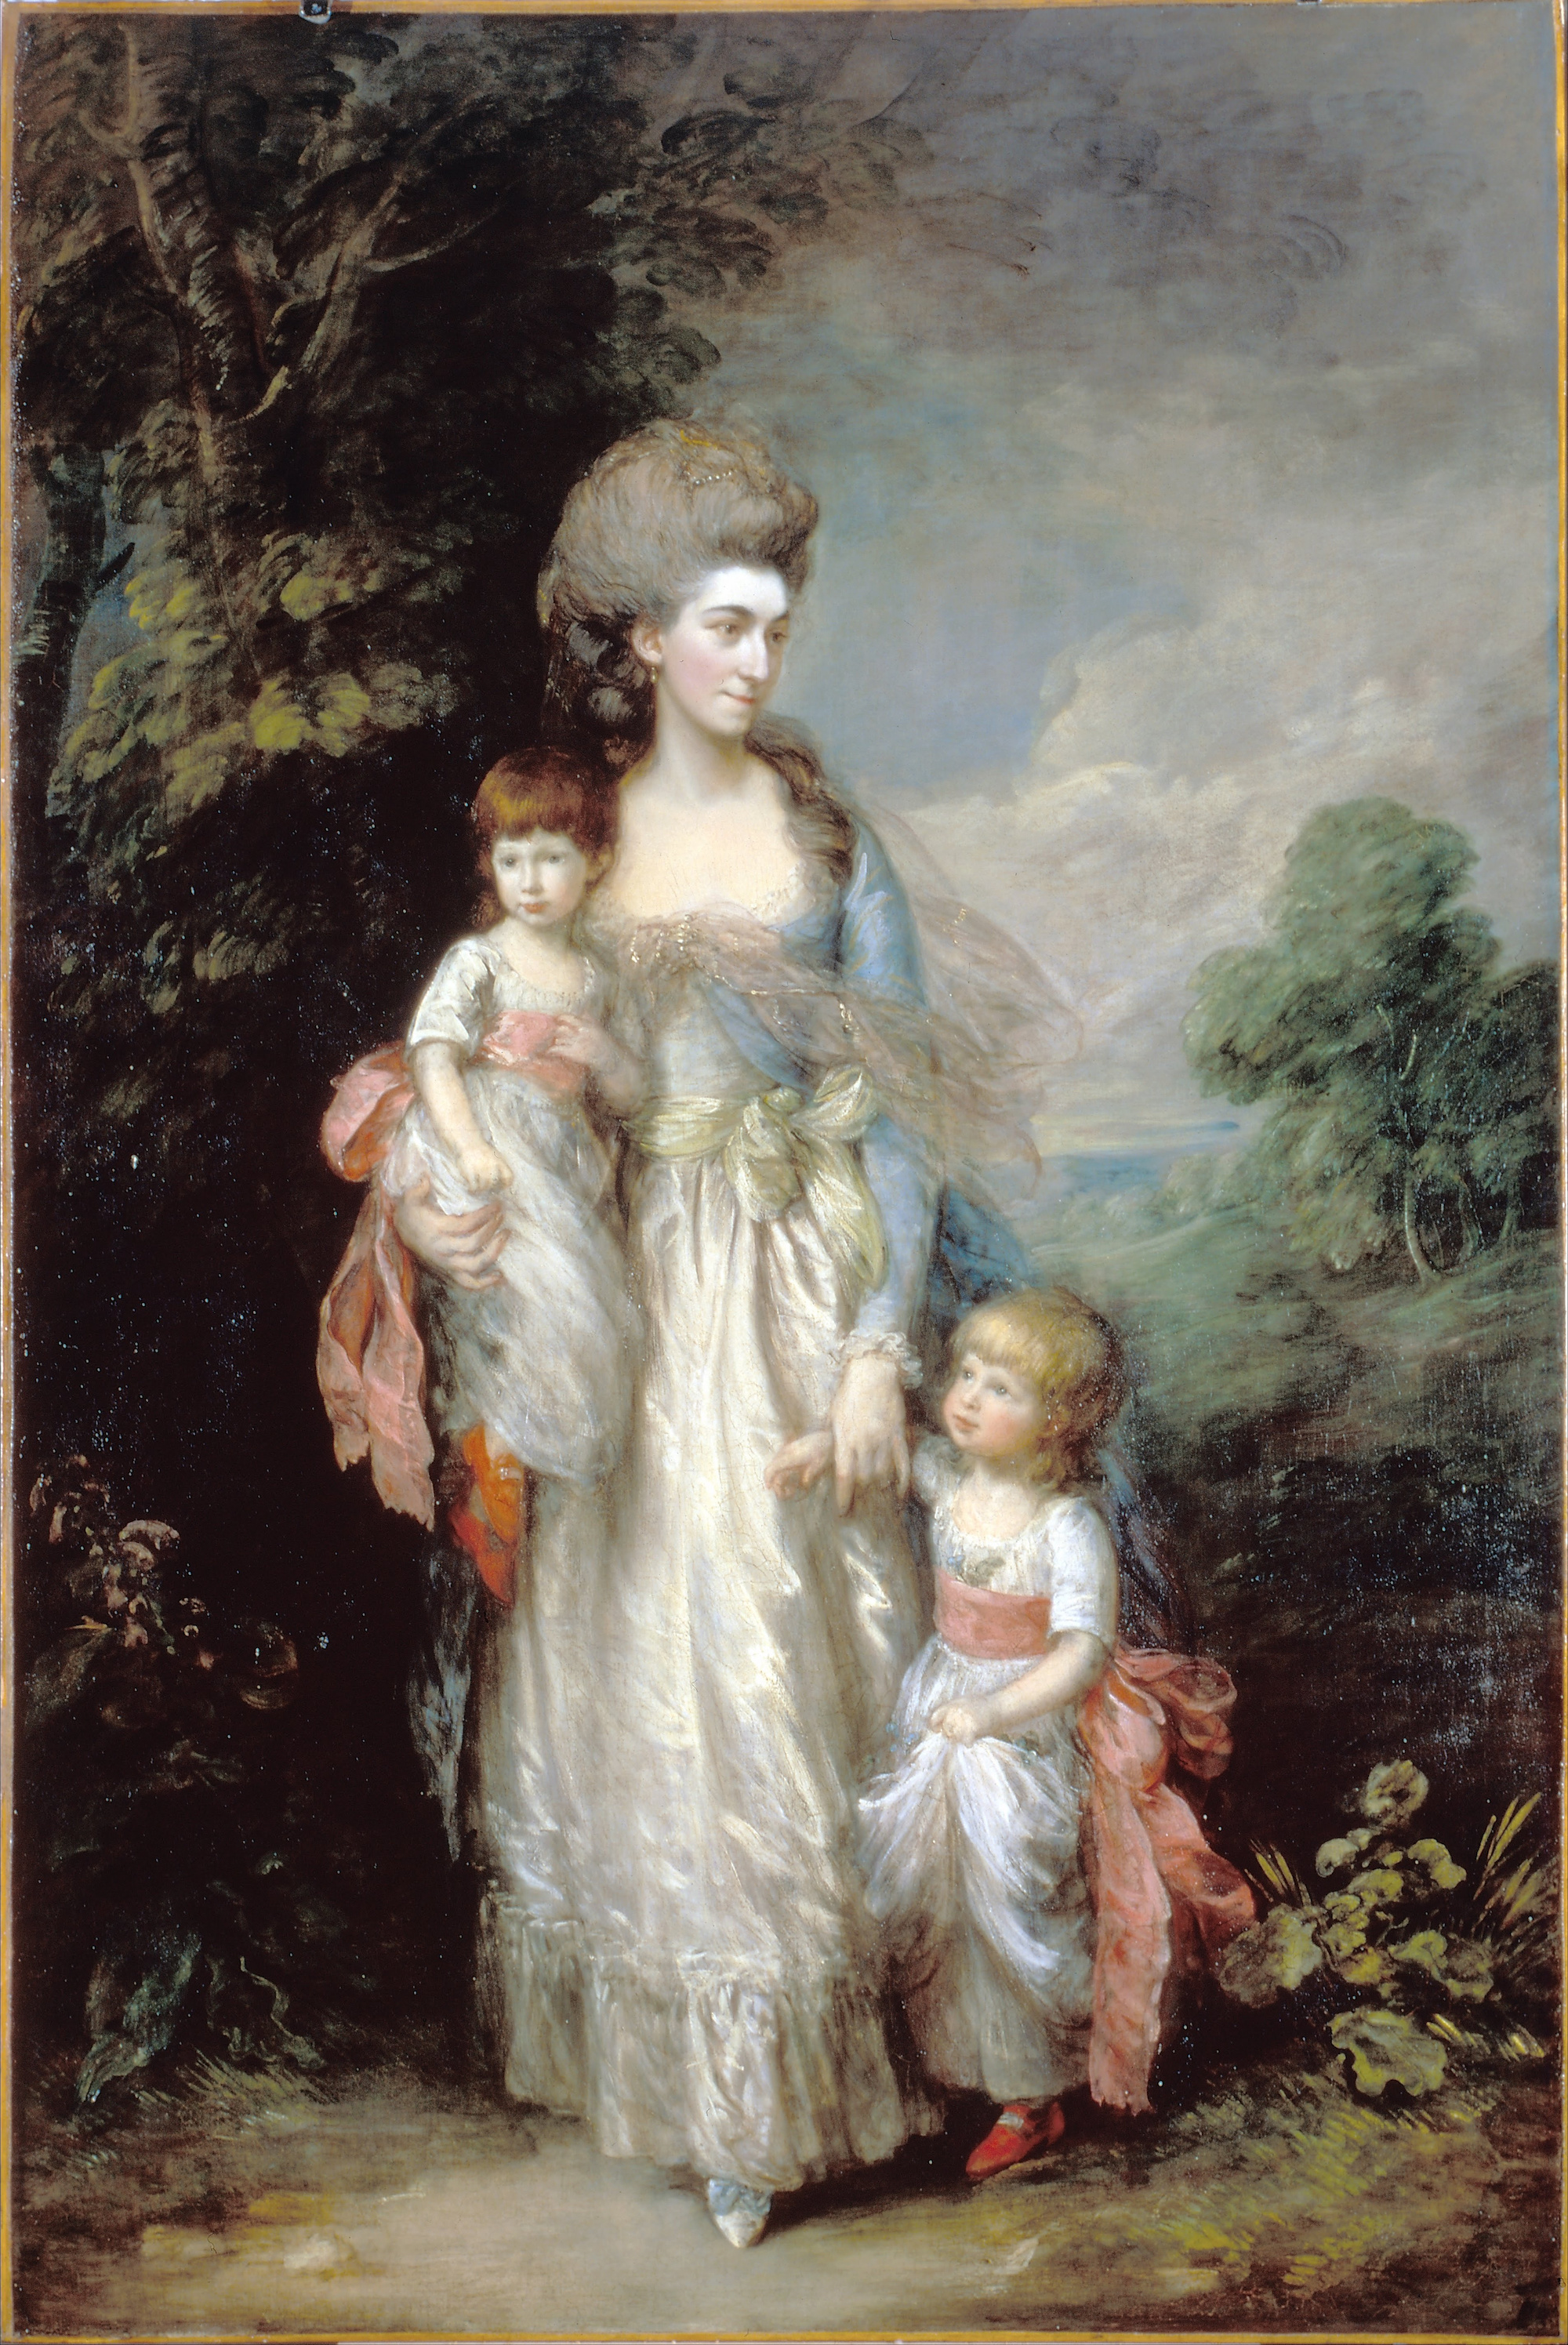 Mme Elizabeth Moody avec ses fils Samuel et Thomas by Thomas Gainsborough - c.1779-85 - 154.2 x 234 cm Dulwich Picture Gallery